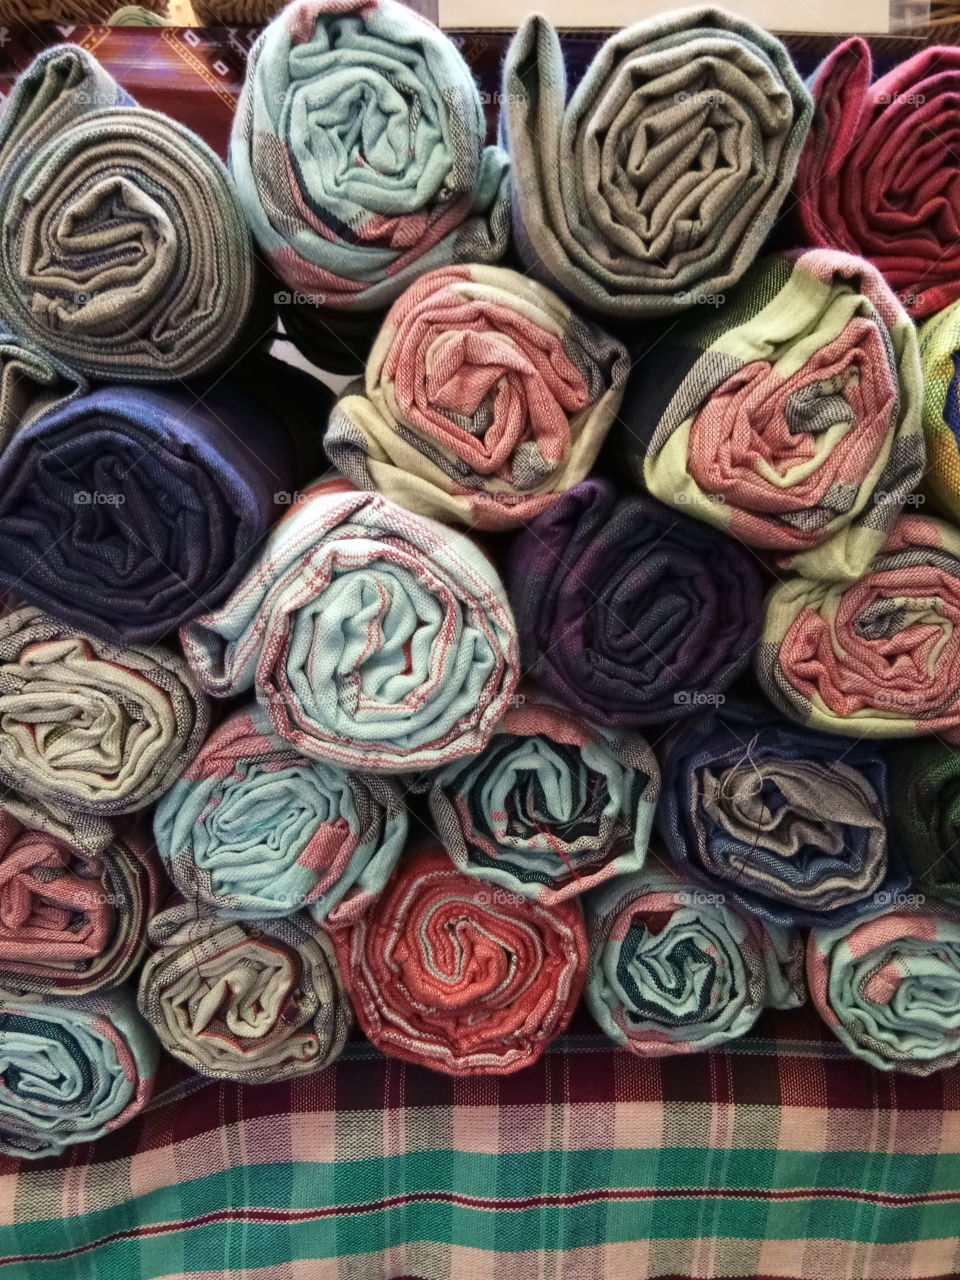 Thai cloth
colors